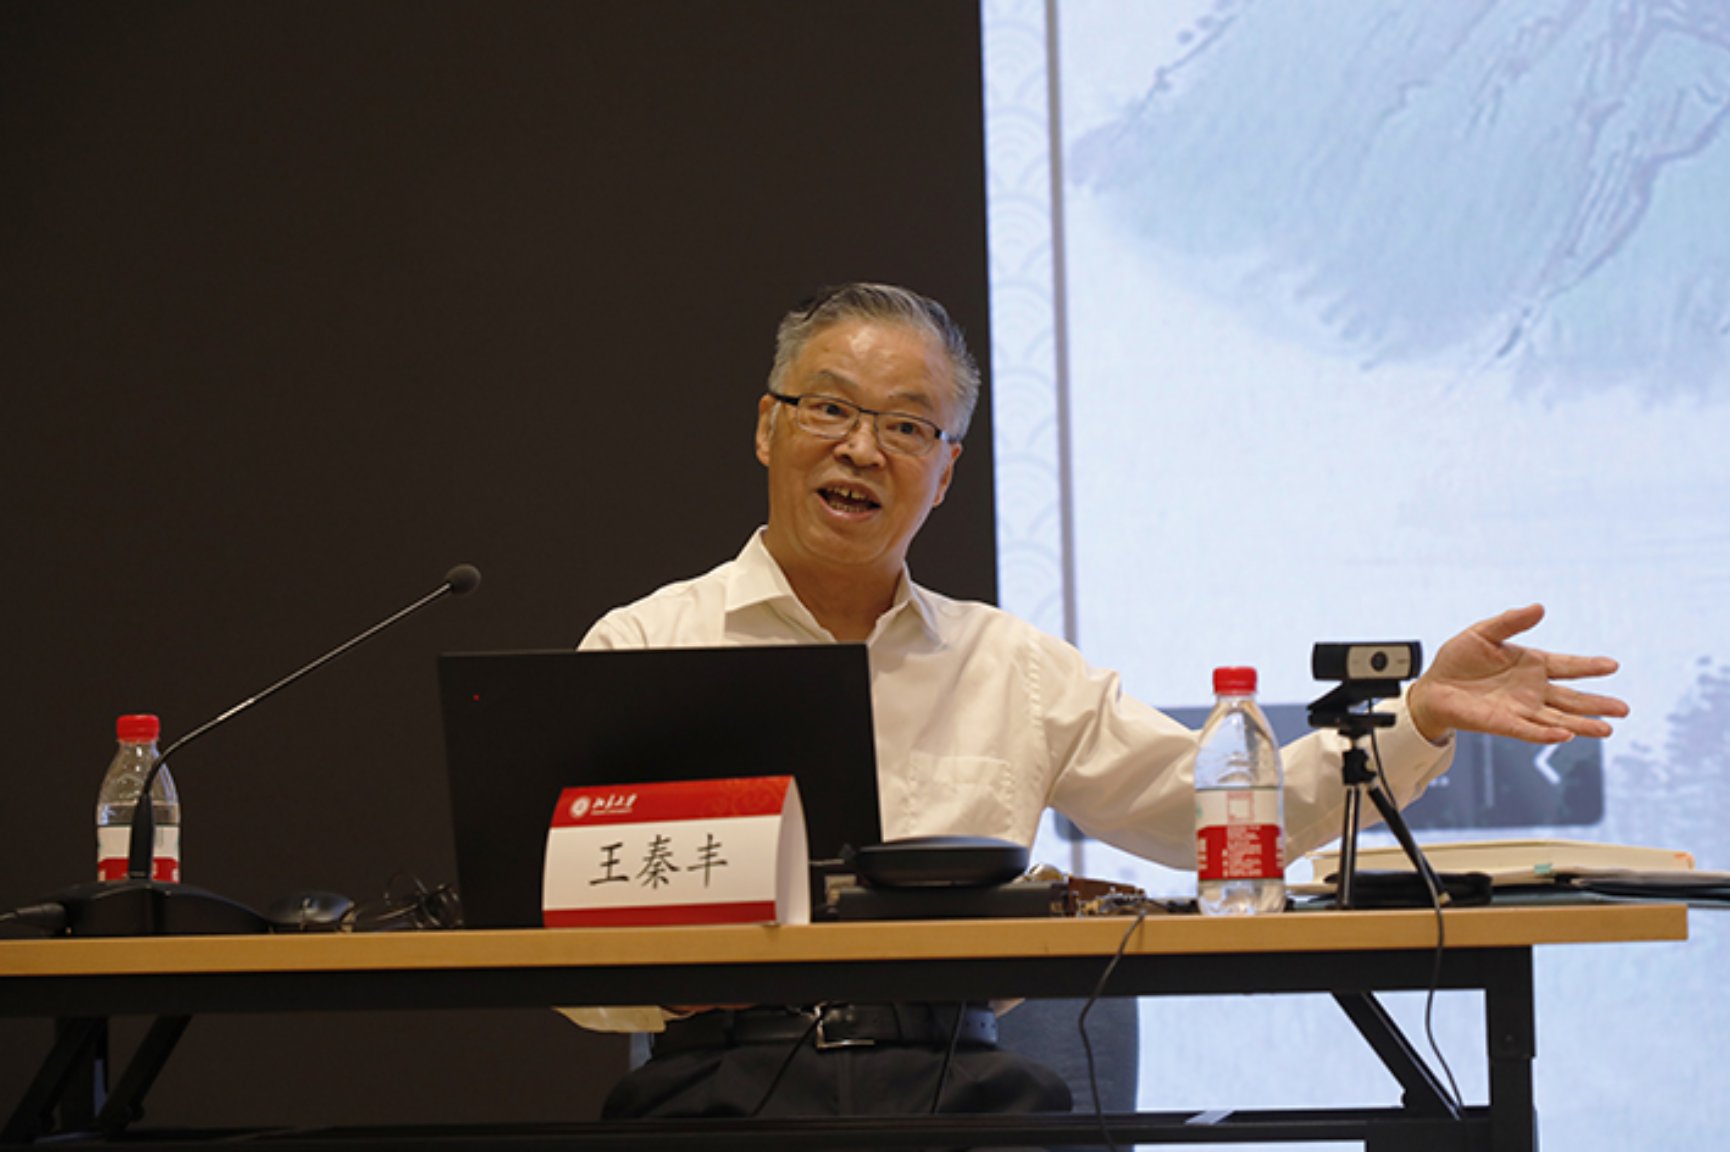 王秦丰在北京大学公共政策讲坛发表演讲